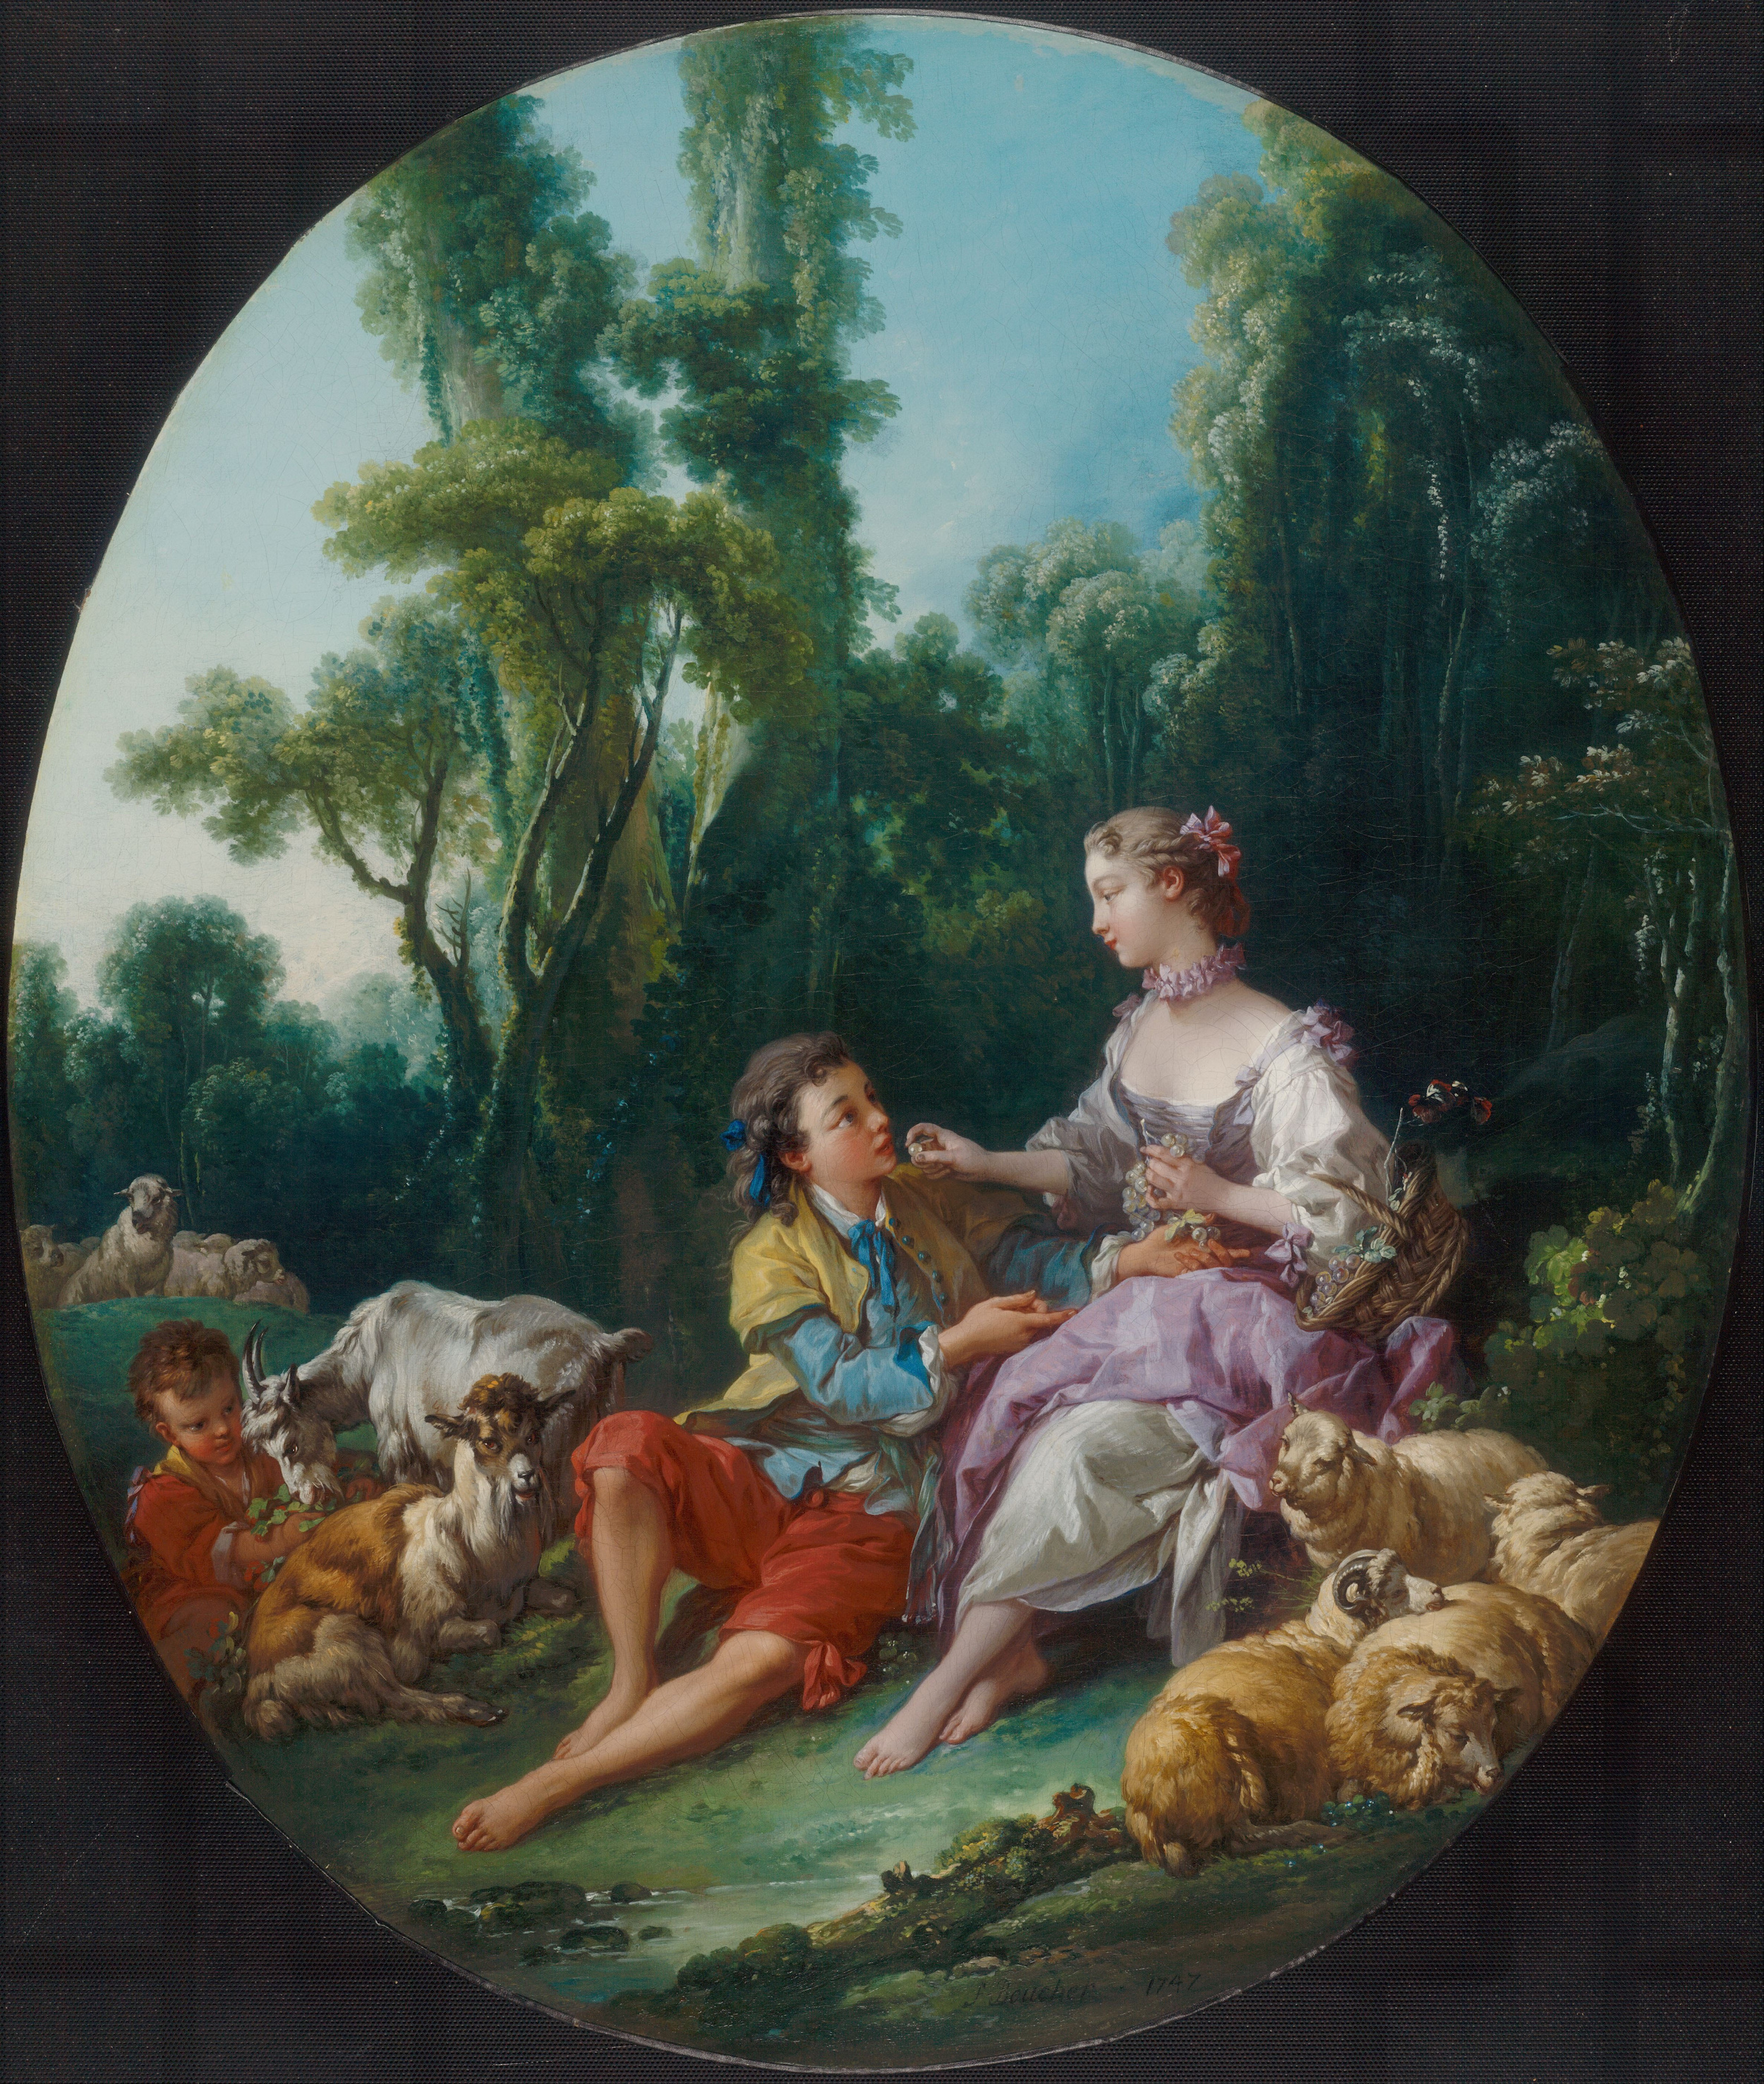 他们是在想着葡萄吗？ by 弗朗索瓦 布歇 - 1747 - 80.8 x 68.5 厘米 芝加哥藝術博物館